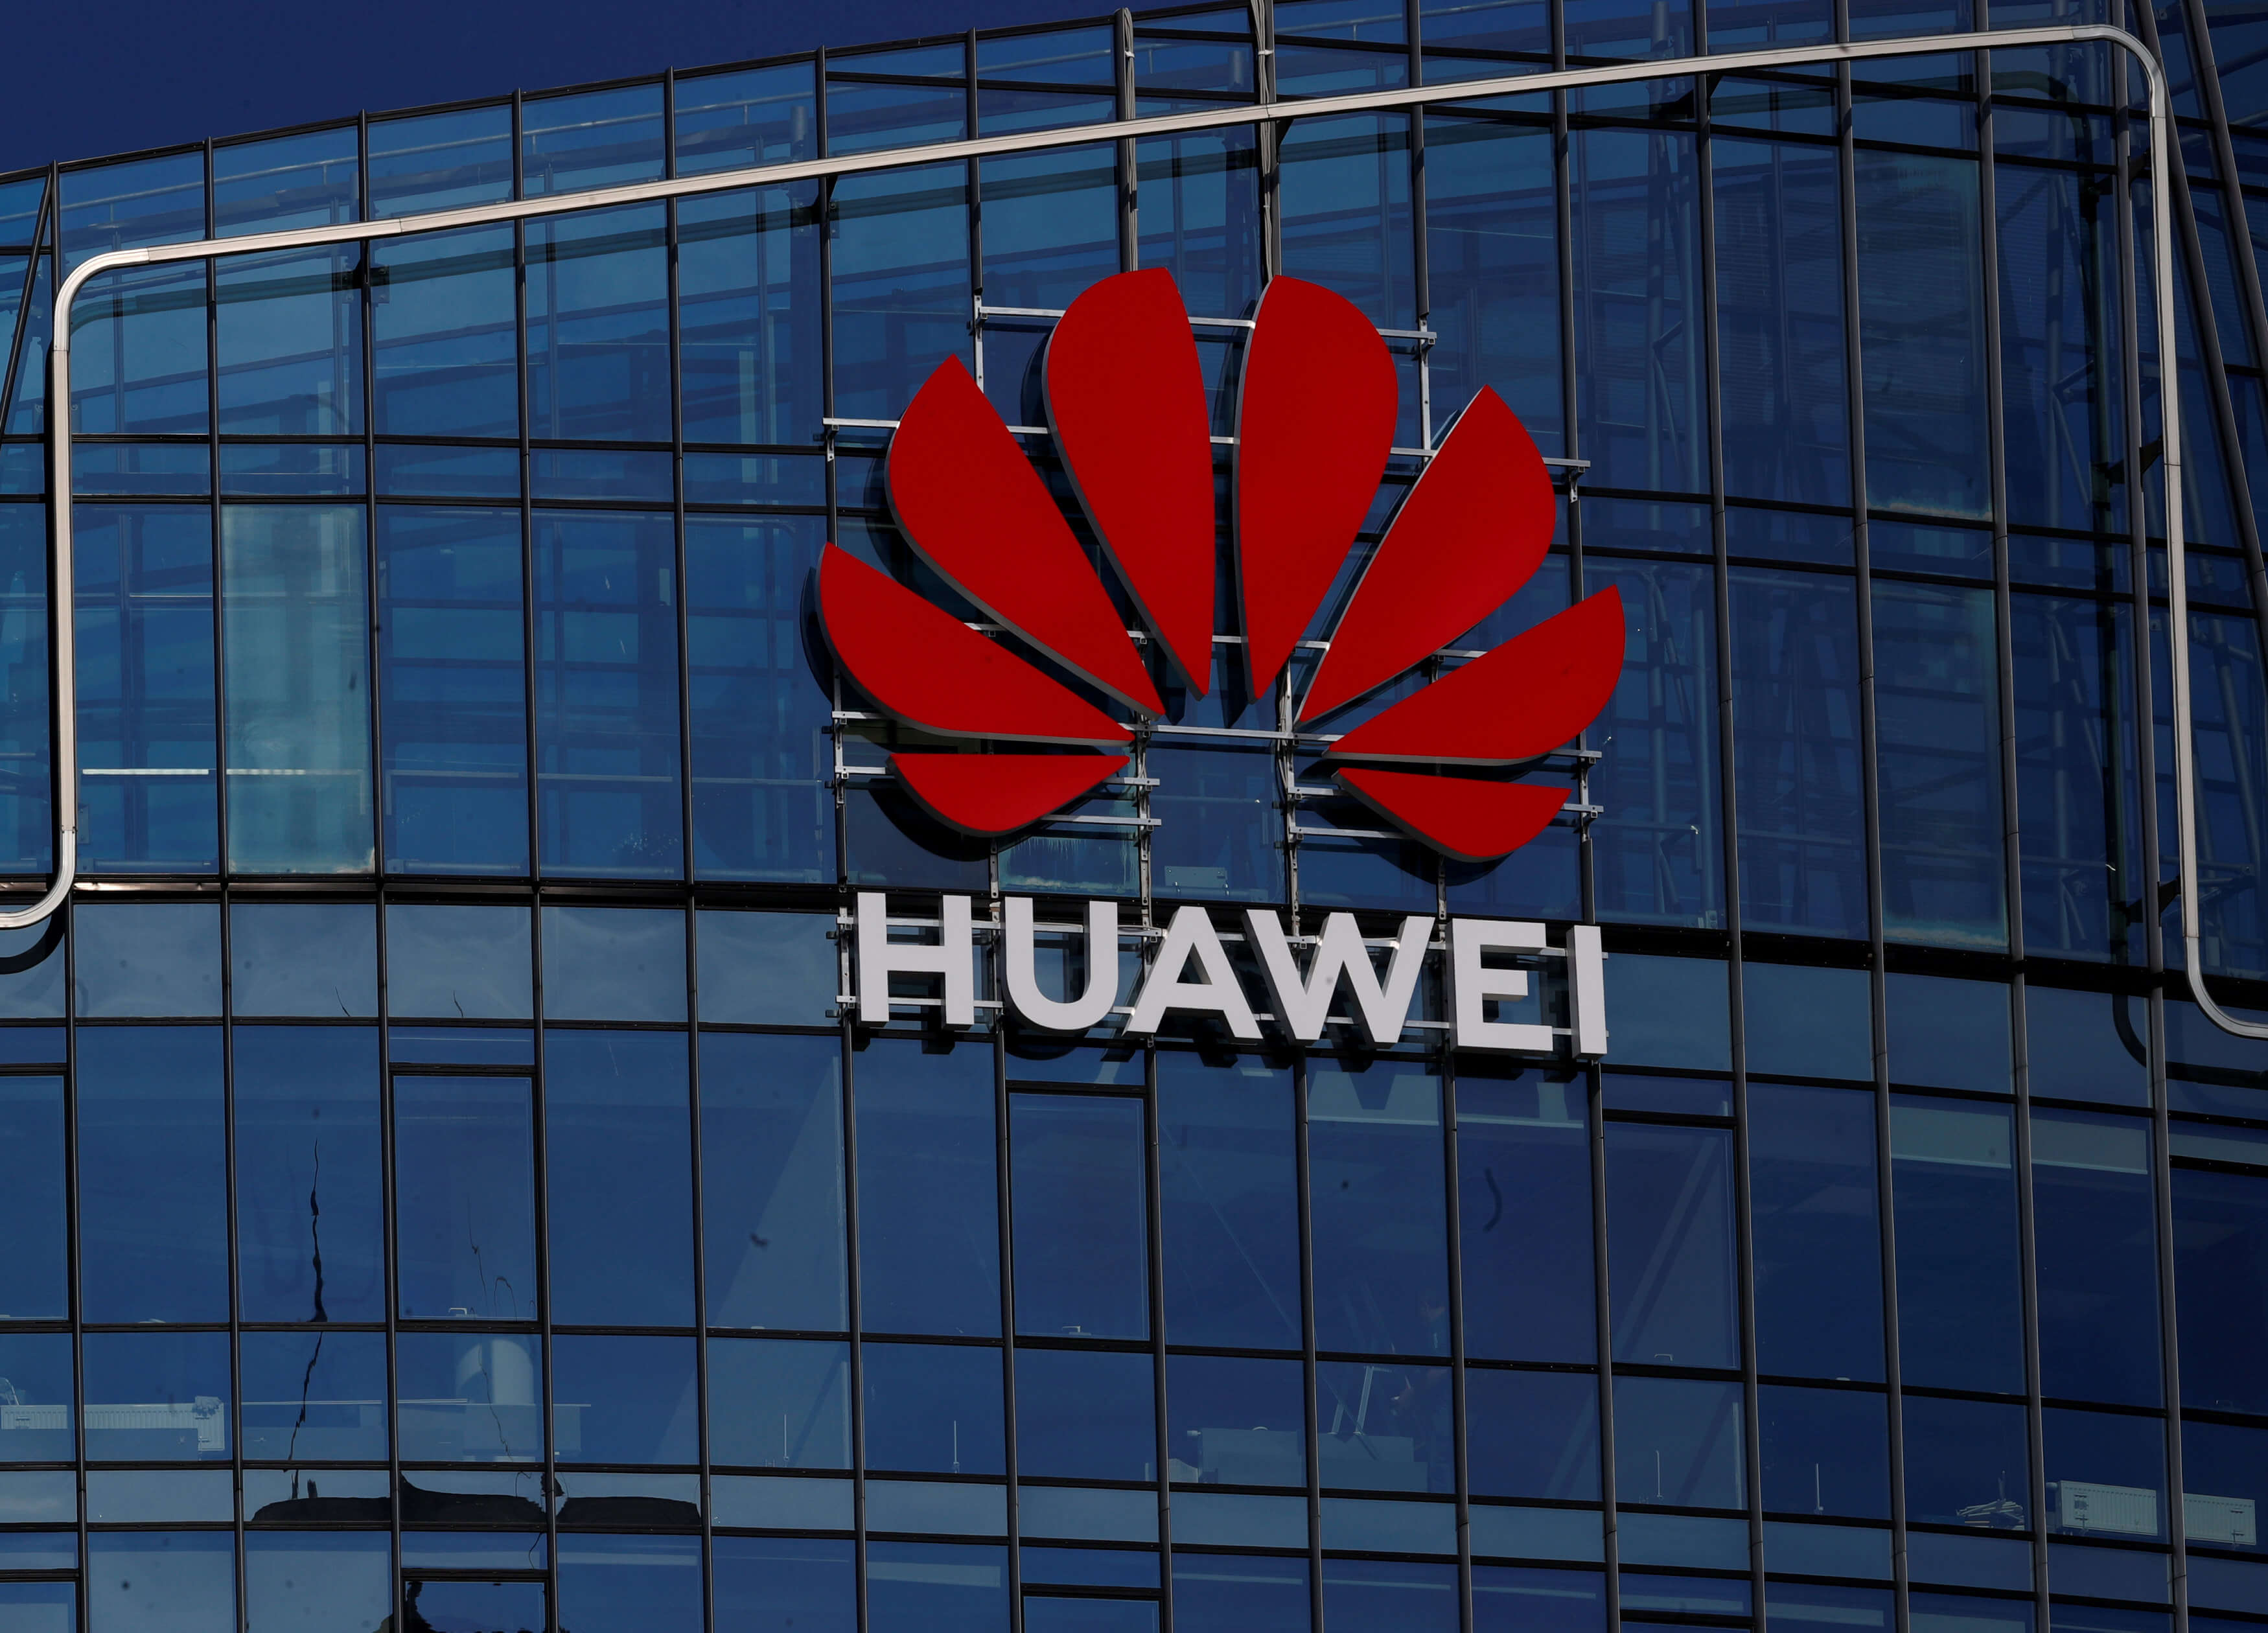 Βρετανία: Λήξαν θεωρείται το θέμα με την Huawei λέει η κυβέρνηση – Αντιδράσεις από την αντιπολίτευση